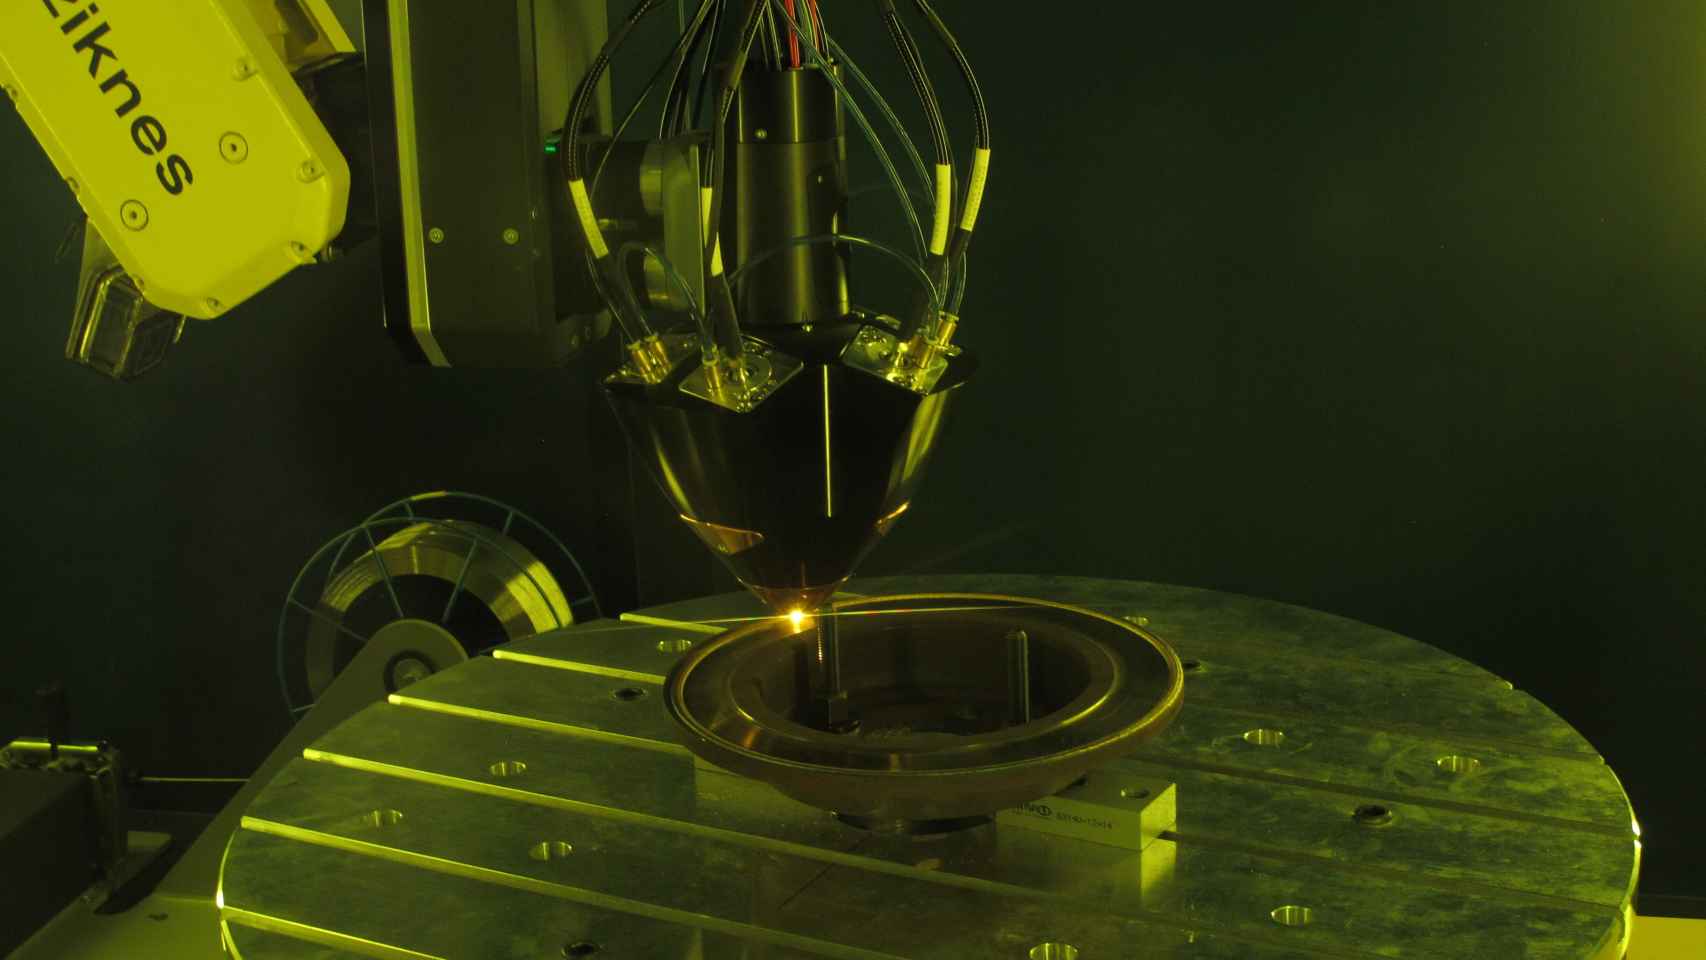 Imagen de la impresión 3D a través de la tecnología láser y robótica desarrollada por la startup.